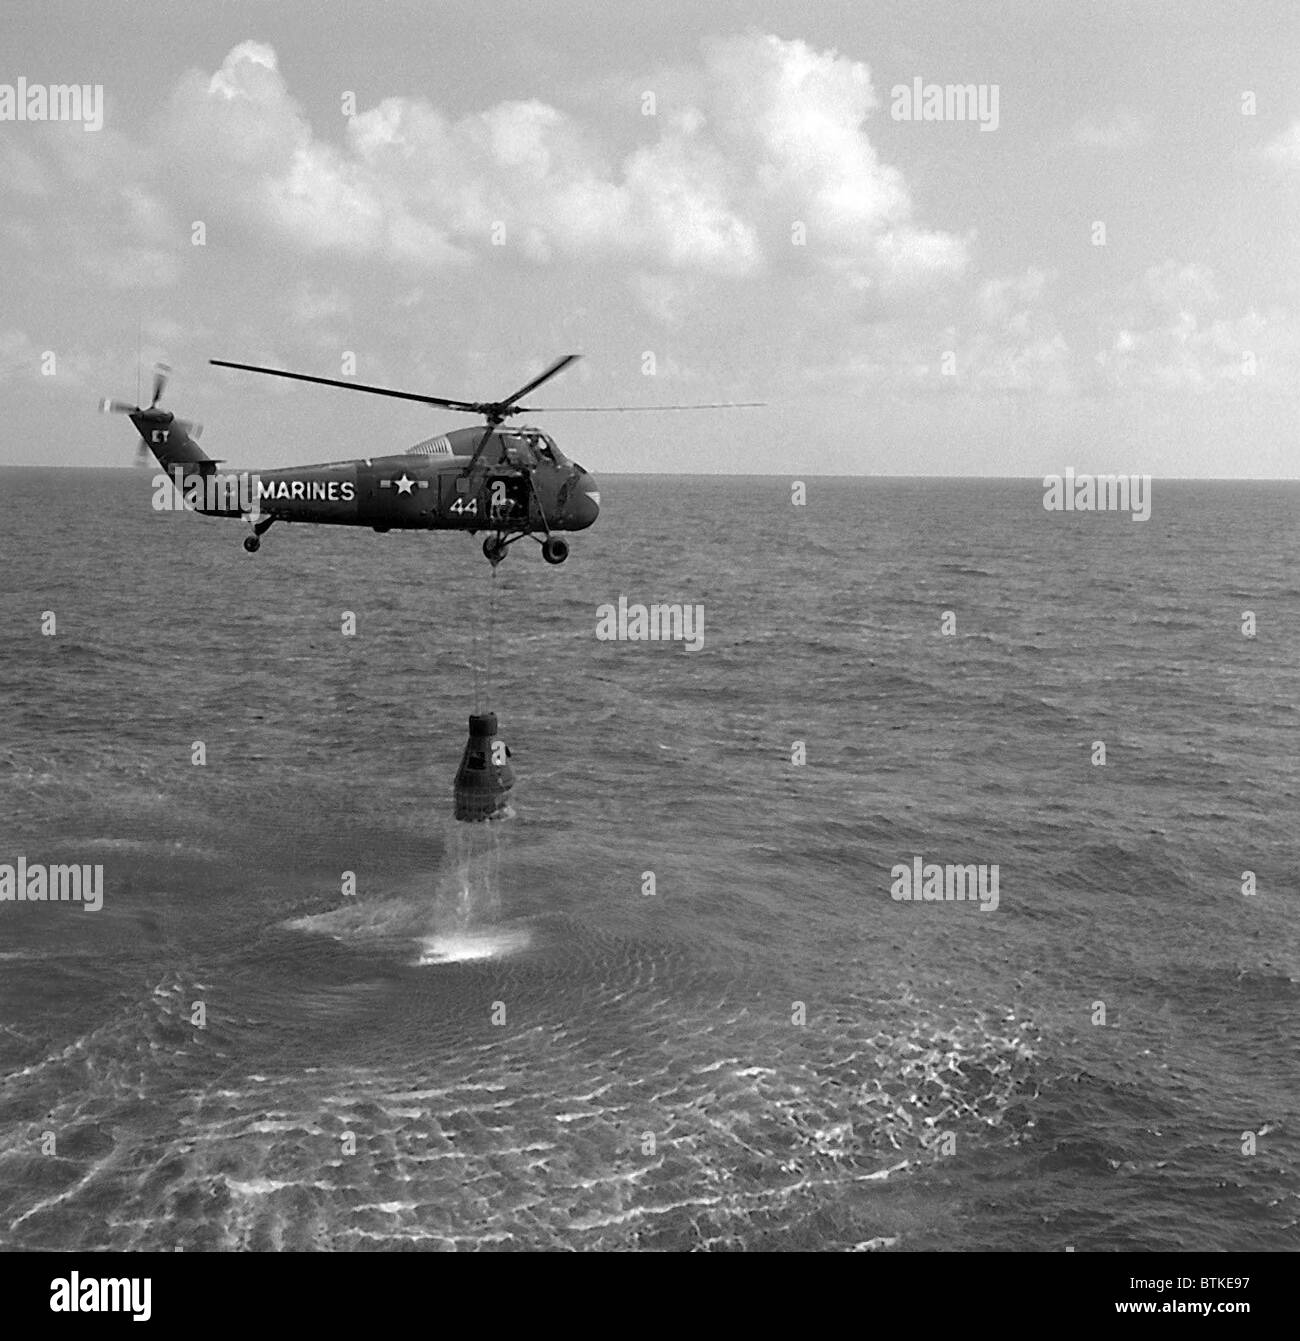 Nach der Wasserung Wiederherstellung der Freedom 7 Raumkapsel von einem US-Marine-Hubschrauber. Freiheit 7 durchgeführt, den erste amerikanischen Astronaut Alan Shepard, in Raum 15-1/2 Minuten auf 5. Mai 1961 gelegt. Stockfoto